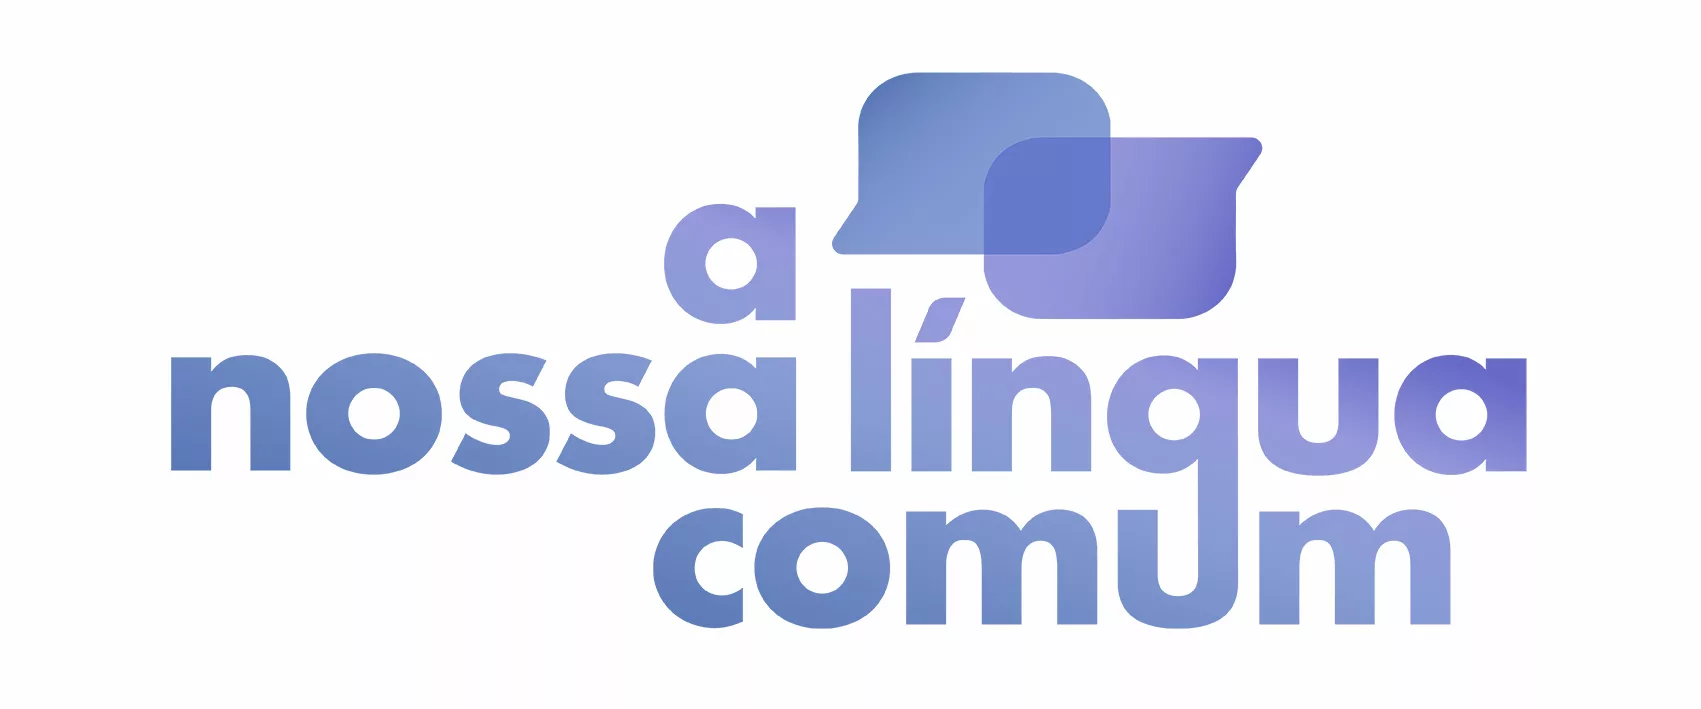 A candidatura “A nossa língua comum” aspira a assumir o Conselho da AGAL -  PGL